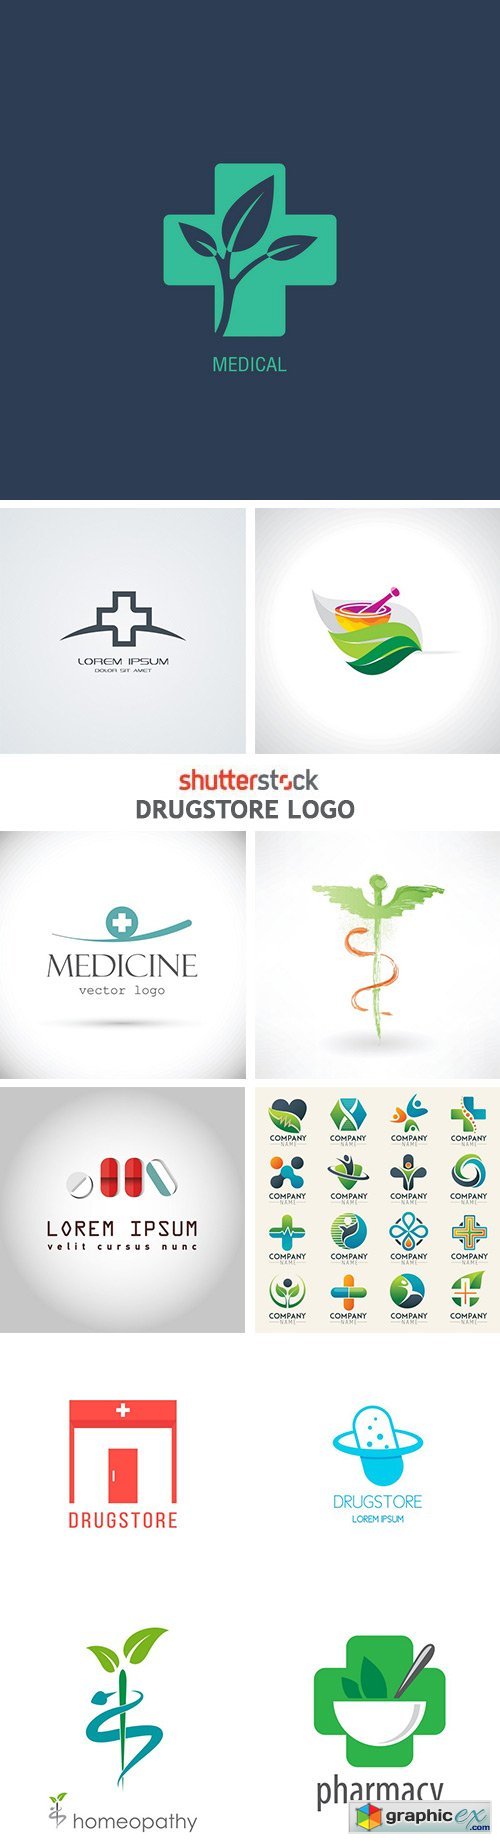 Drugstore Logo - 25xEPS